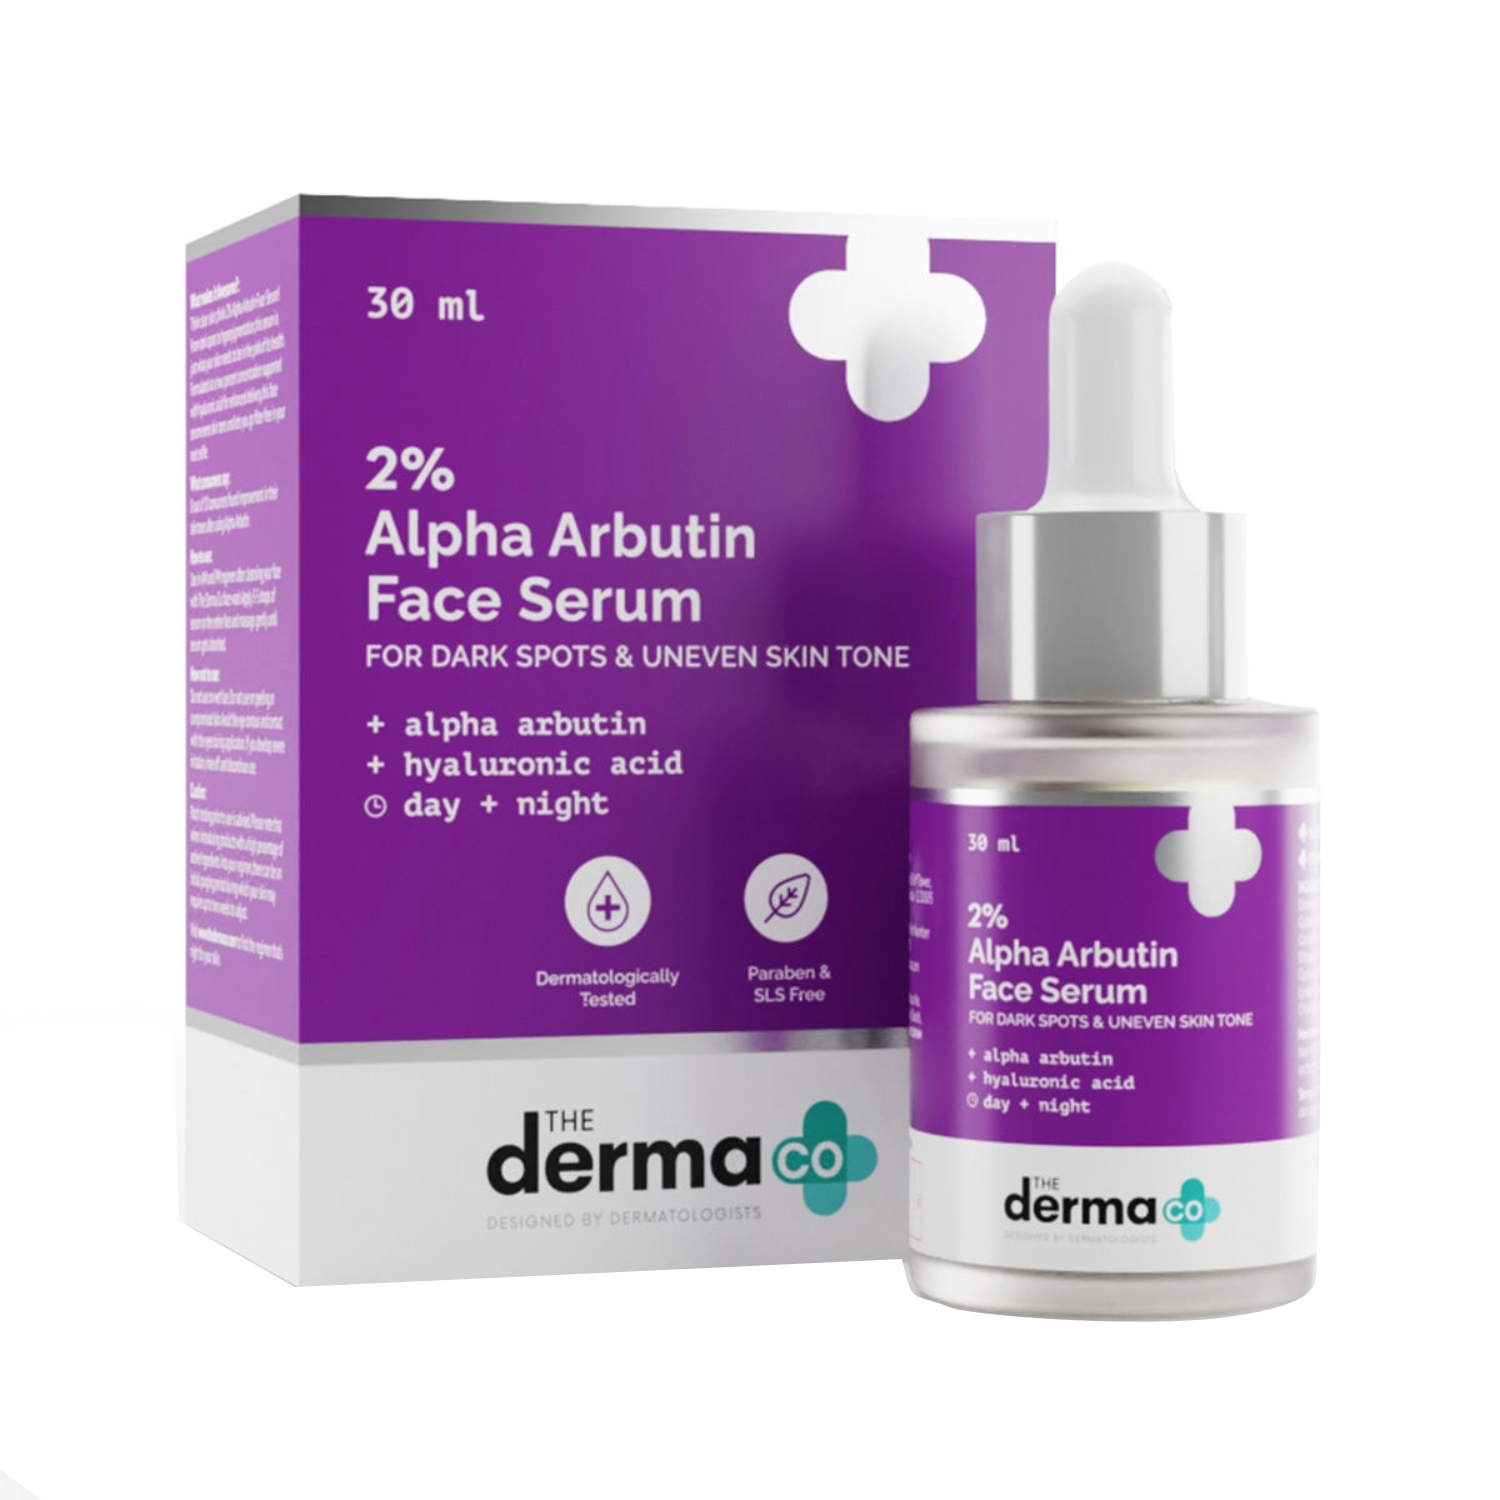 The Derma Co | The Derma Co 2% Alpha Arbutin Face Serum (30ml)